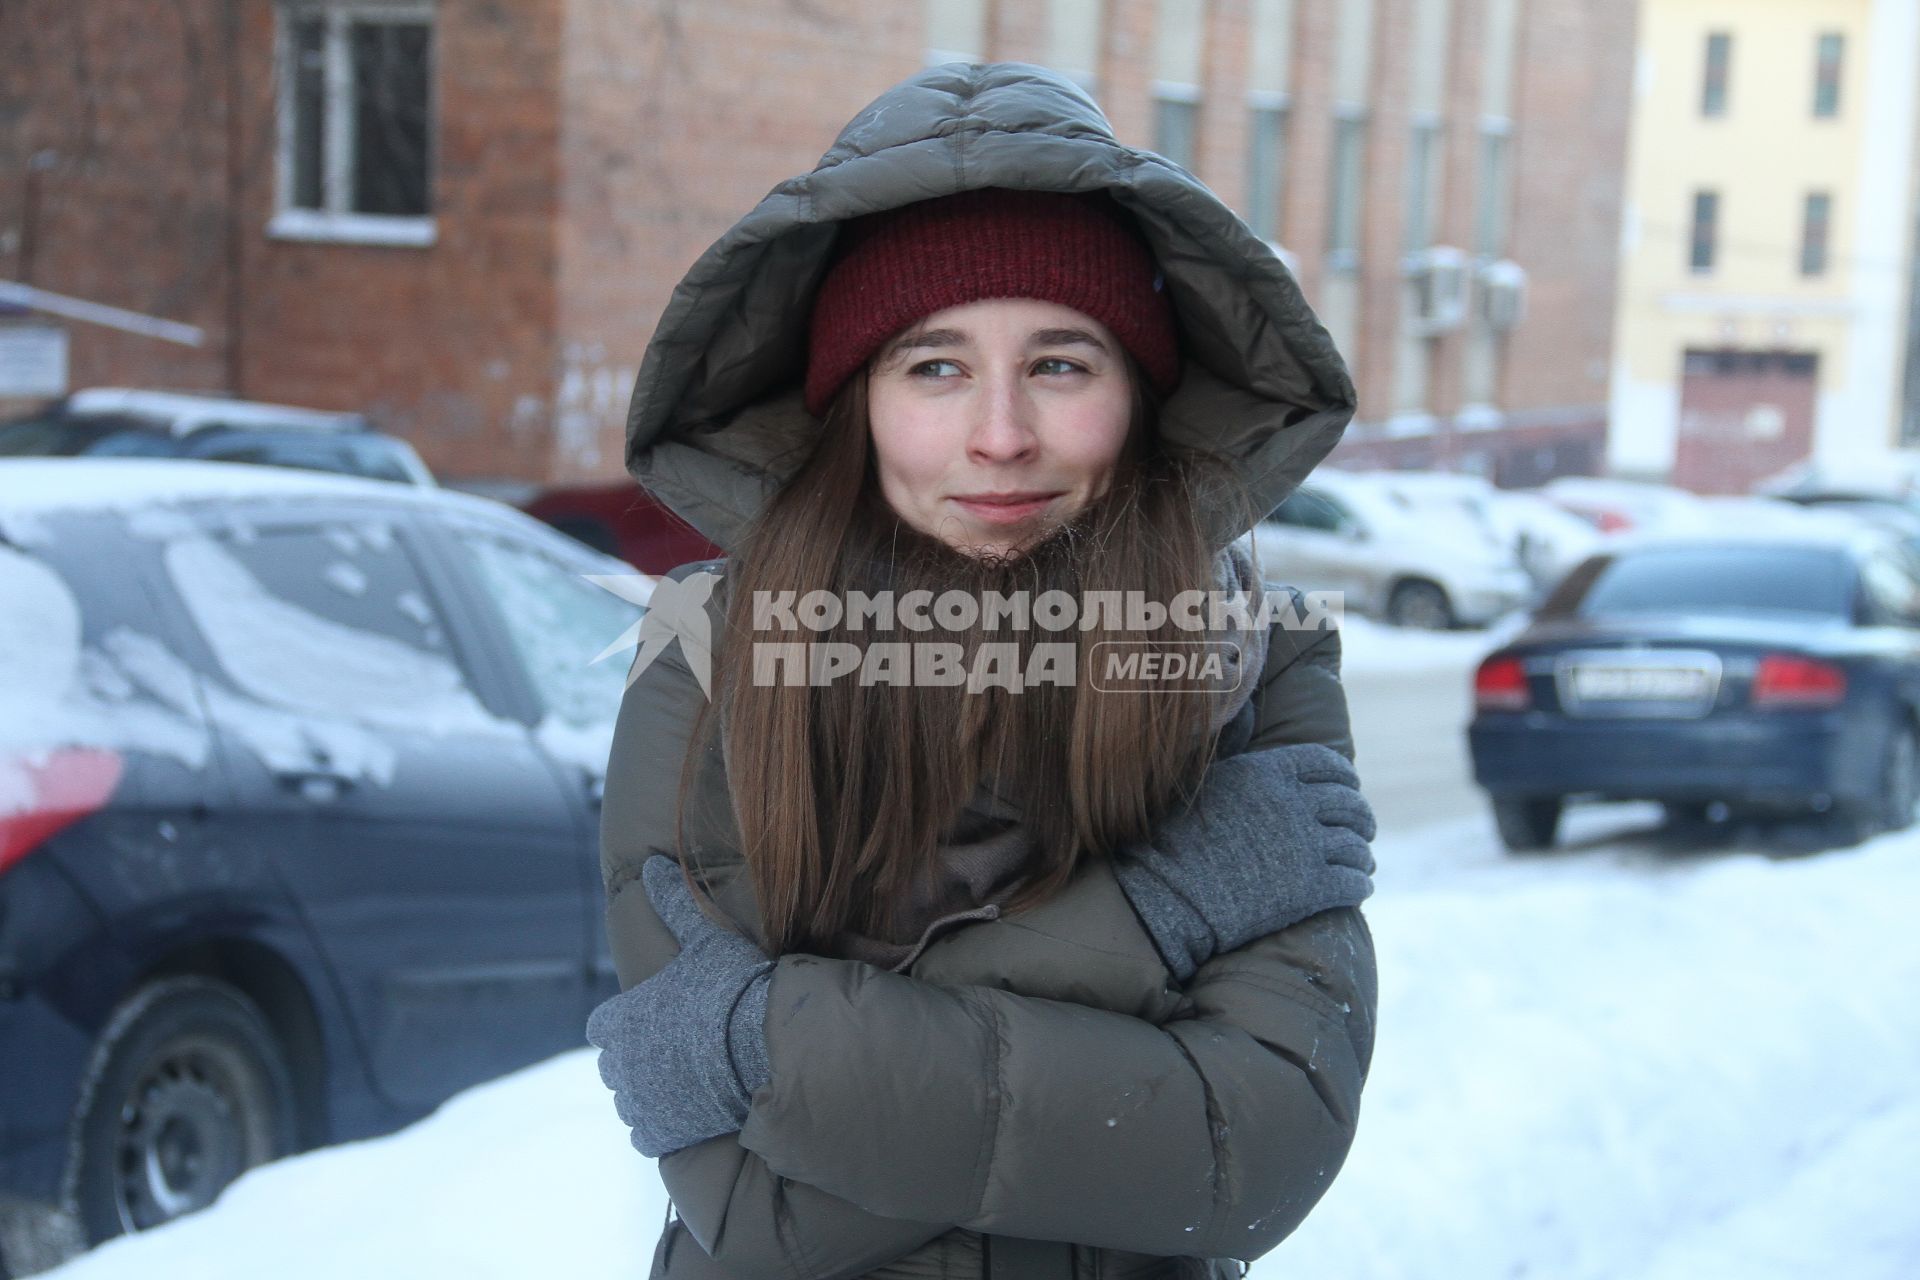 Нижний Новгород. Девушка  во время сильного мороза.